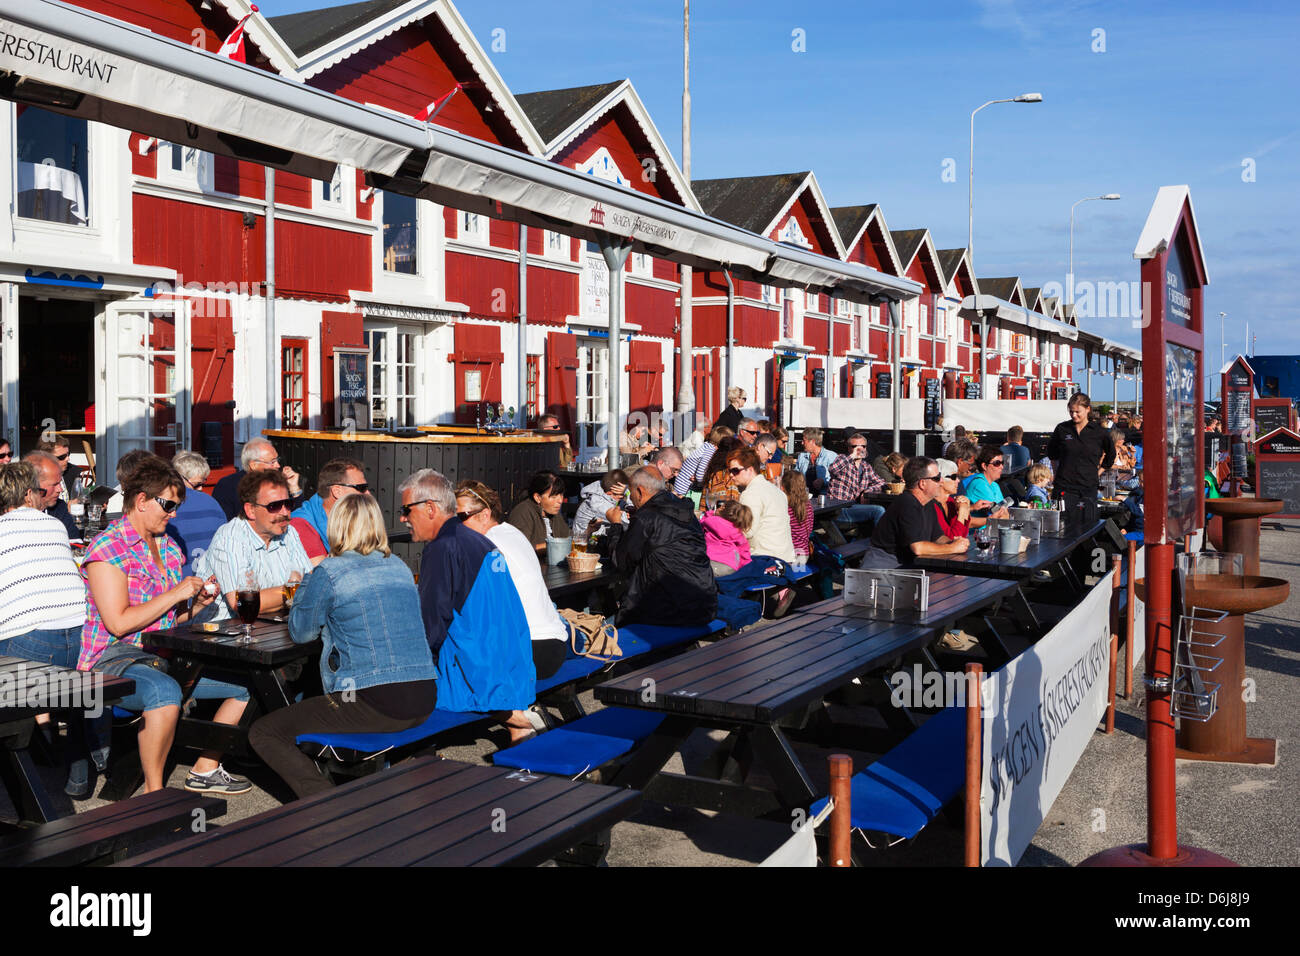 Restaurants de fruits de mer d'Harbourside, Skagen, Jutland, Danemark, Scandinavie, Europe Banque D'Images